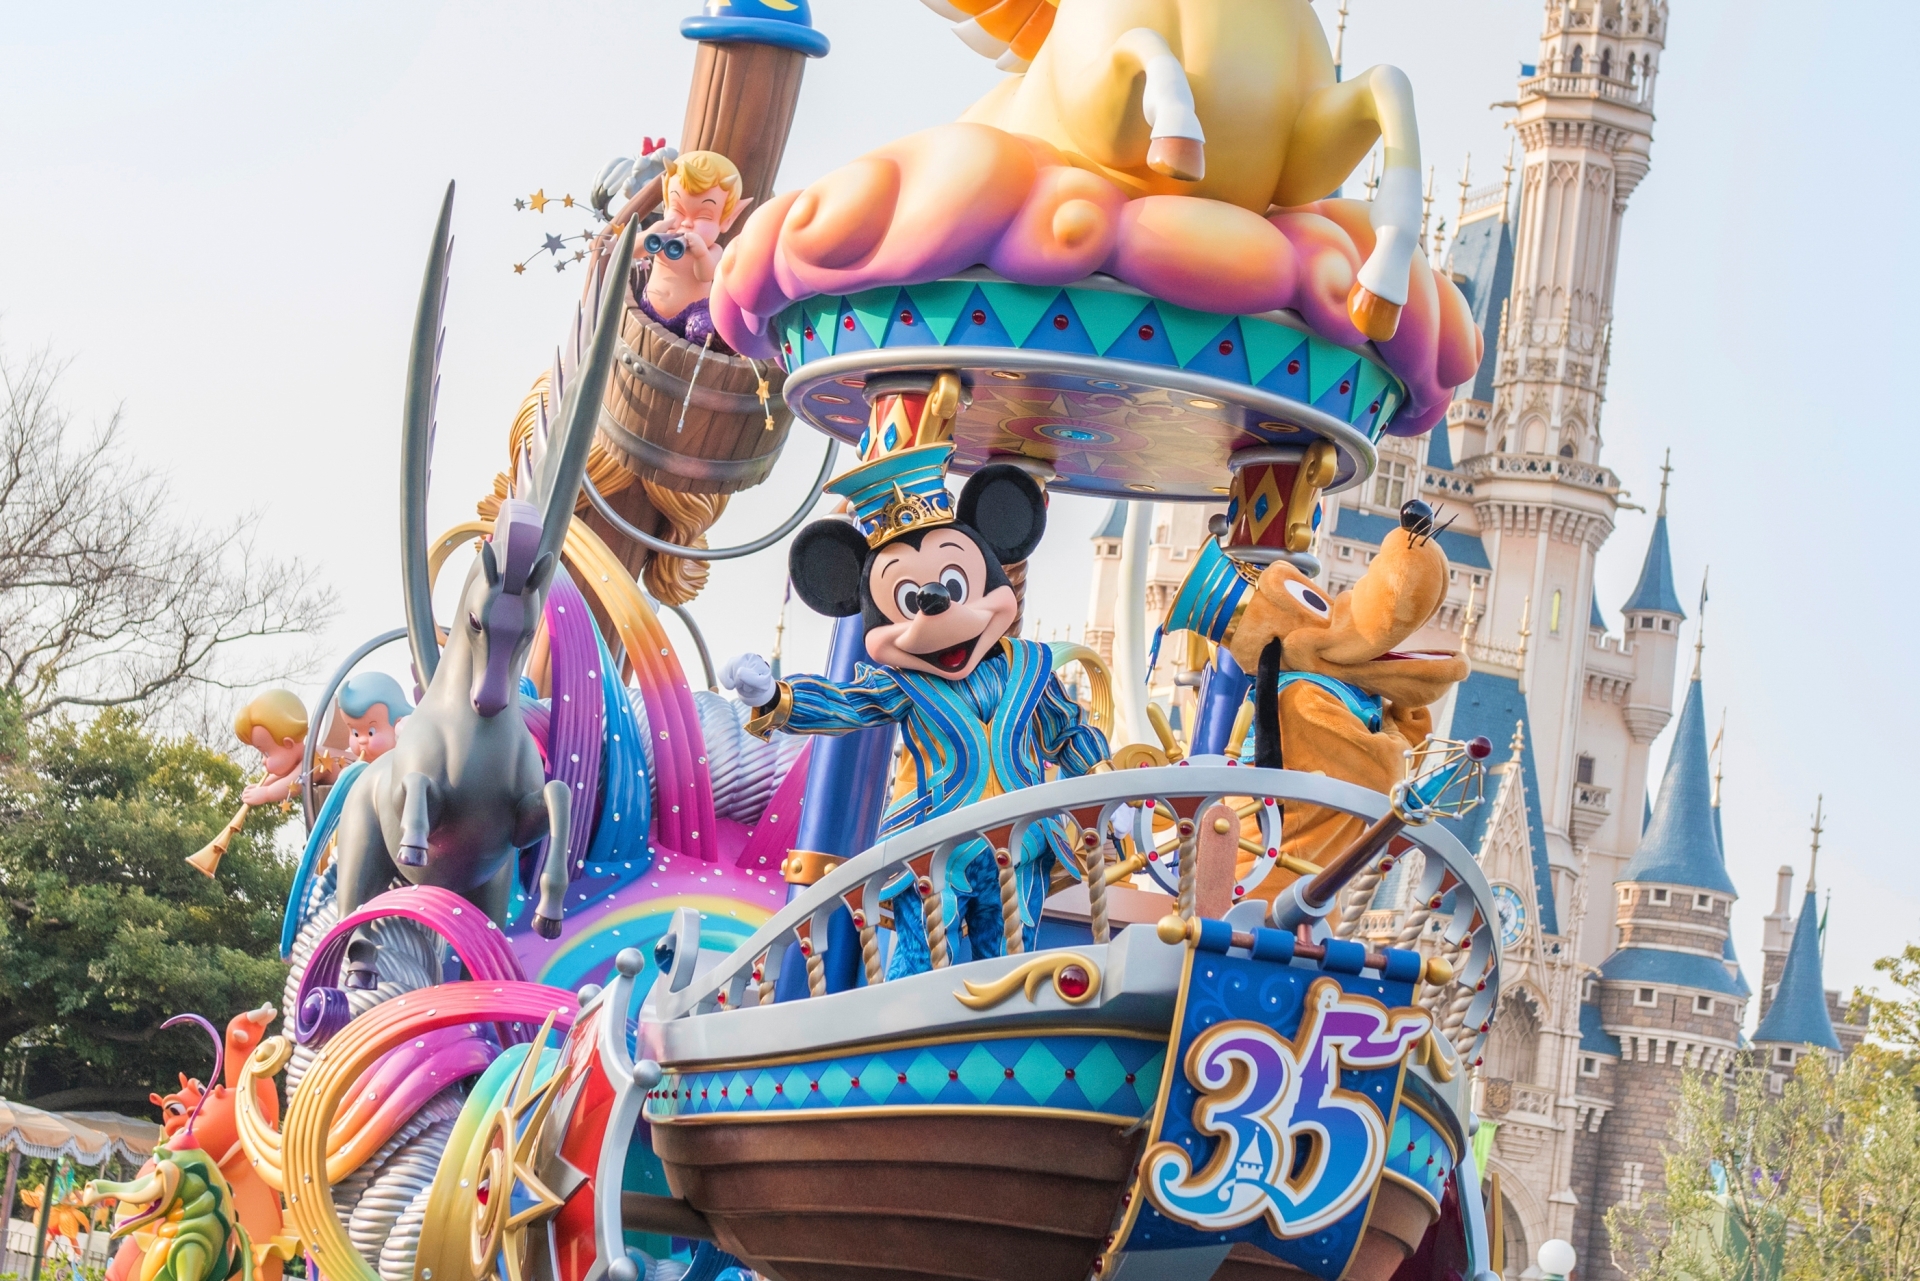 Get 20 percent off Tokyo Disneyland and DisneySea tickets now